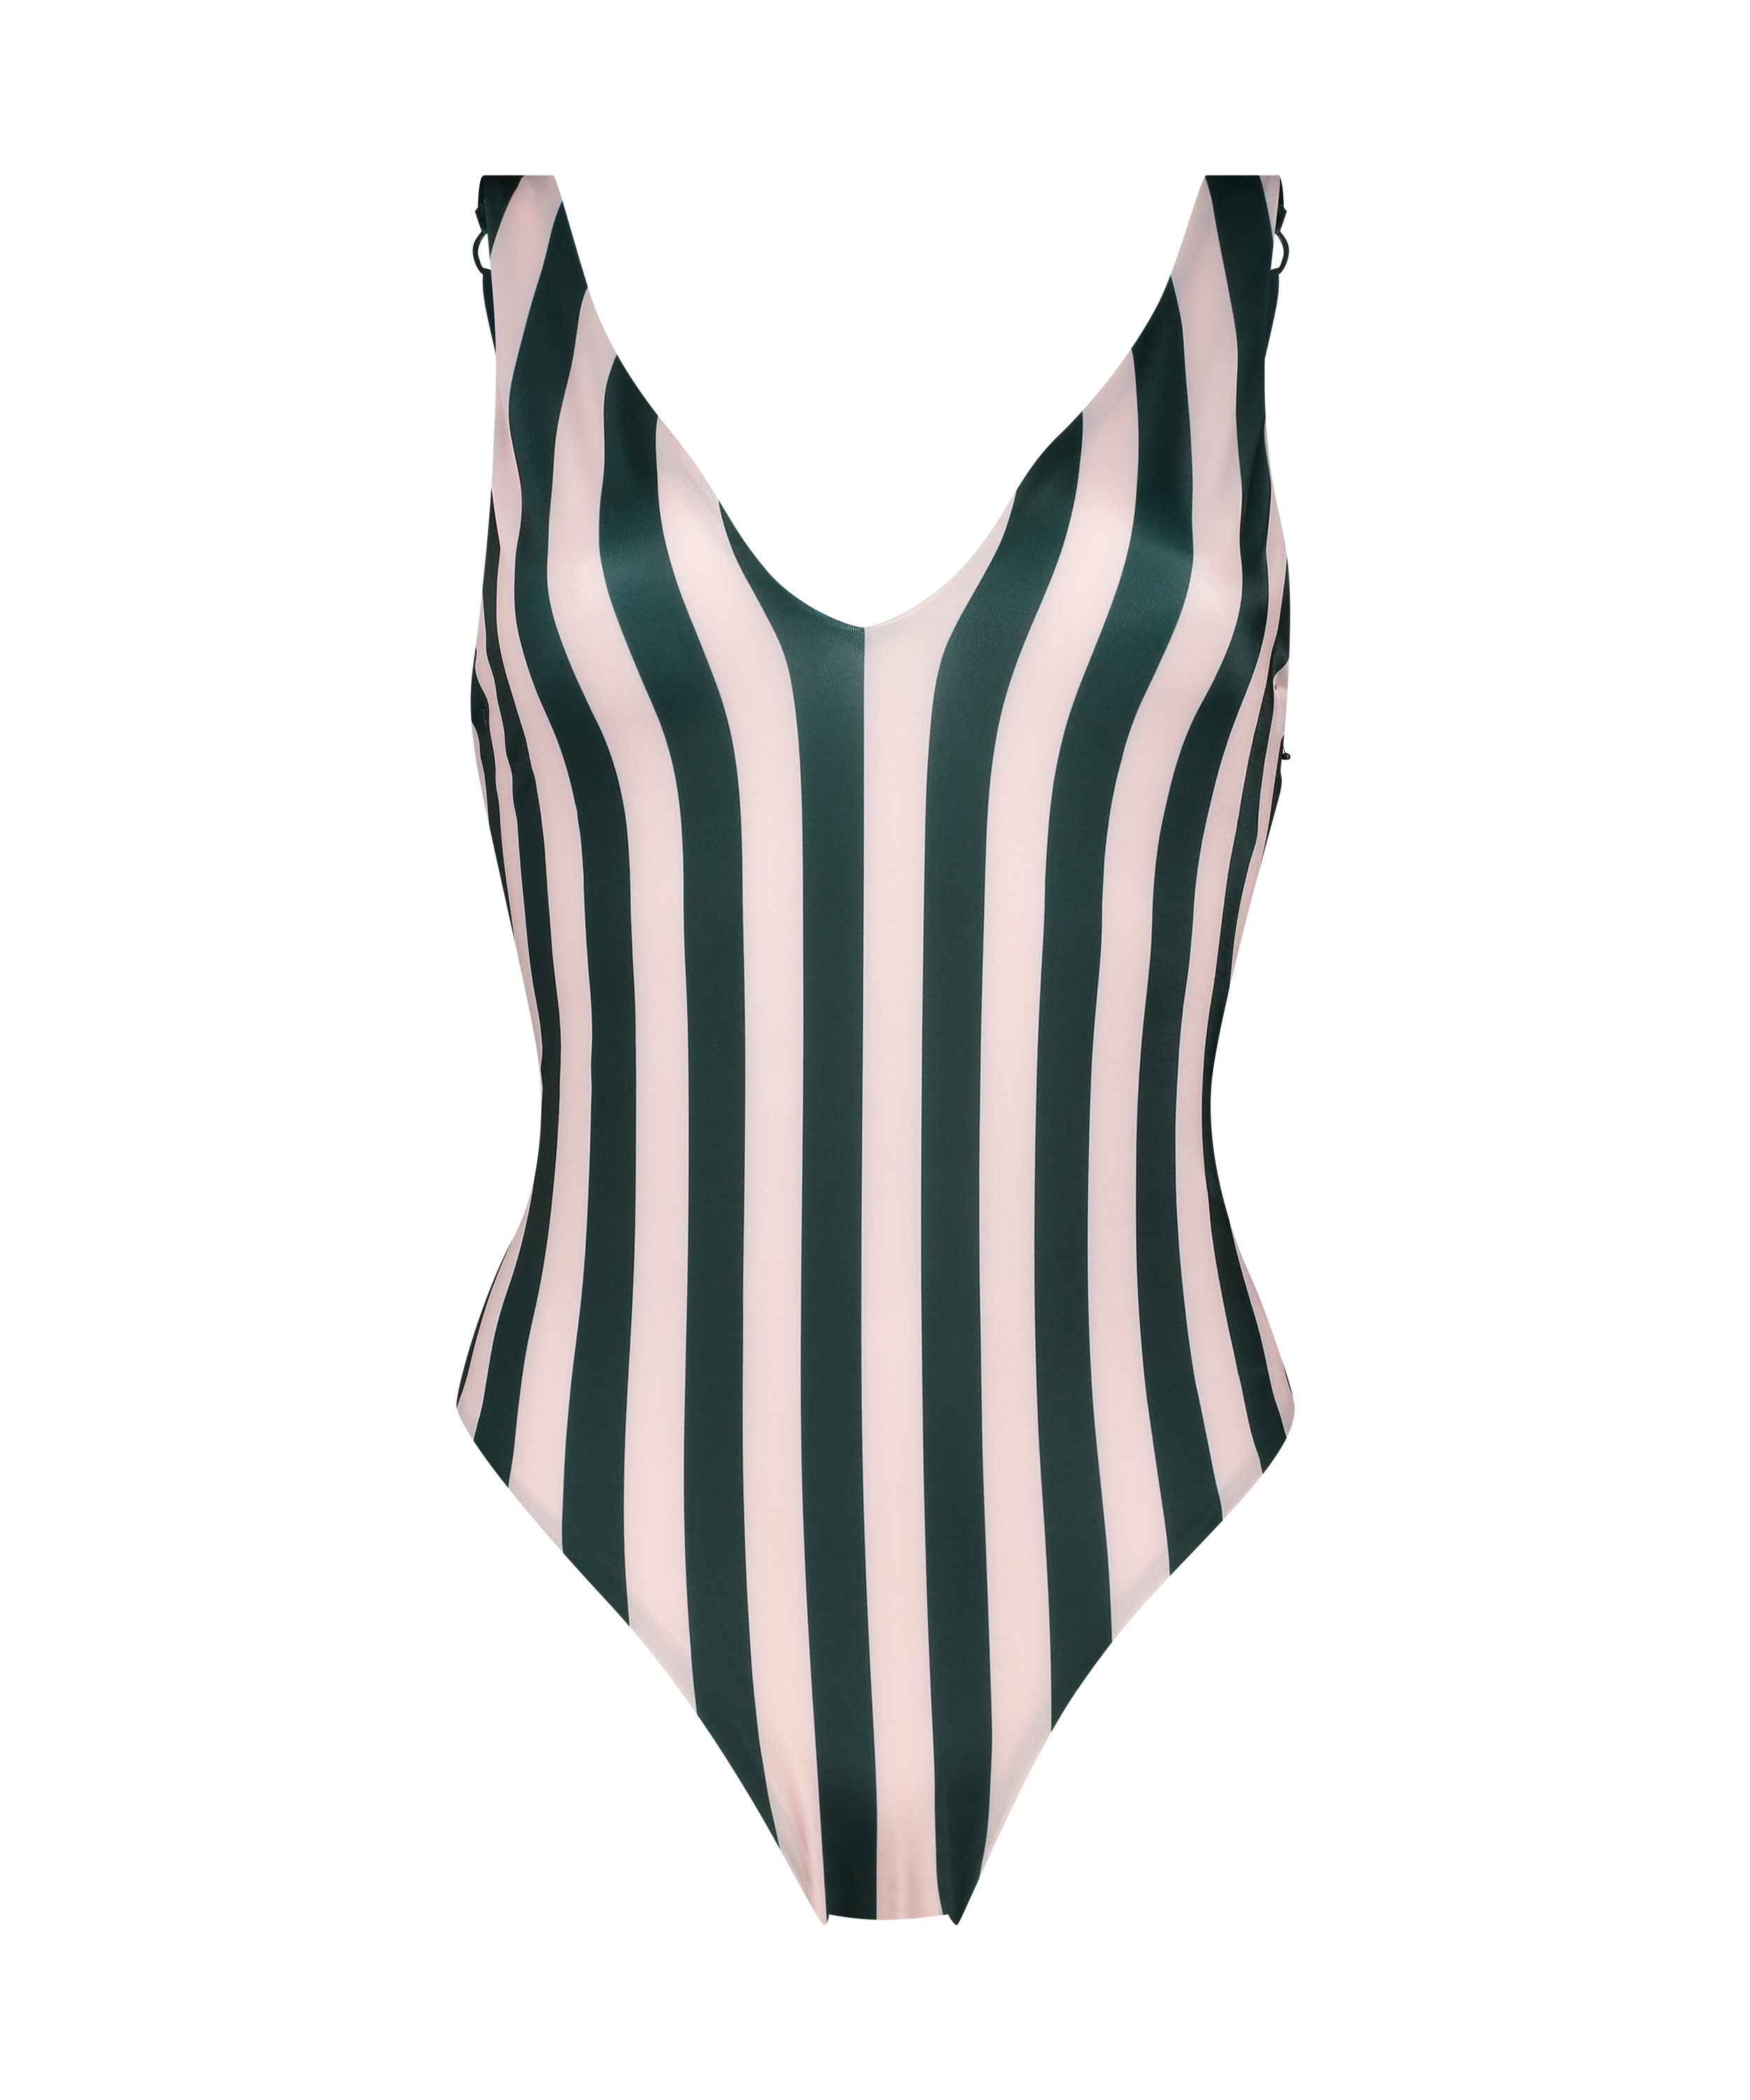 Santa Rosa swimsuit for £35 - Swimsuits - Hunkemöller